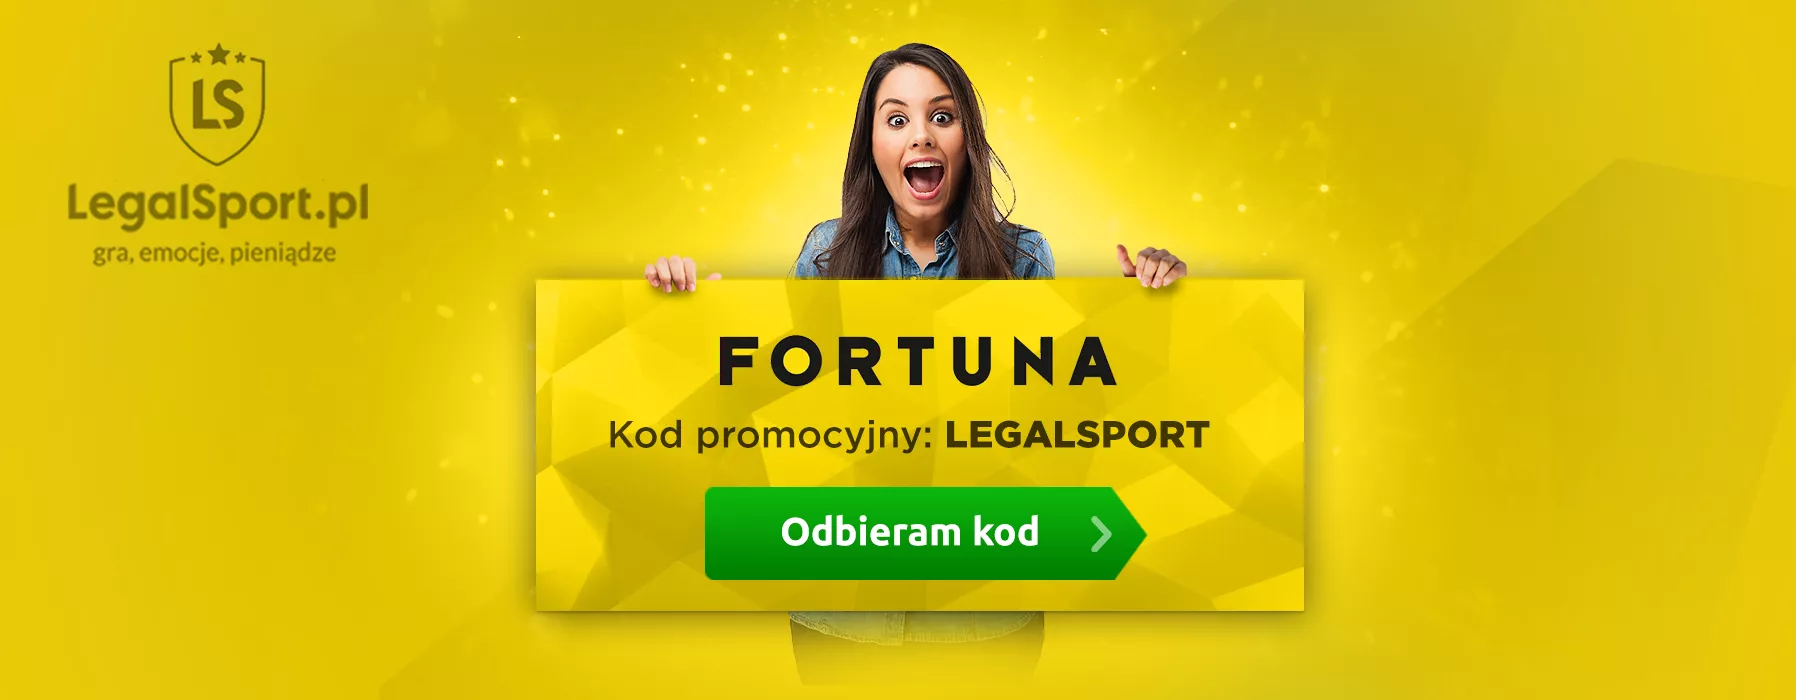 Ekskluzywny kod promocyjny od LegalSport.pl do Fortuna, który aktywuje max. promocje niedostępne w normalnej ofercie